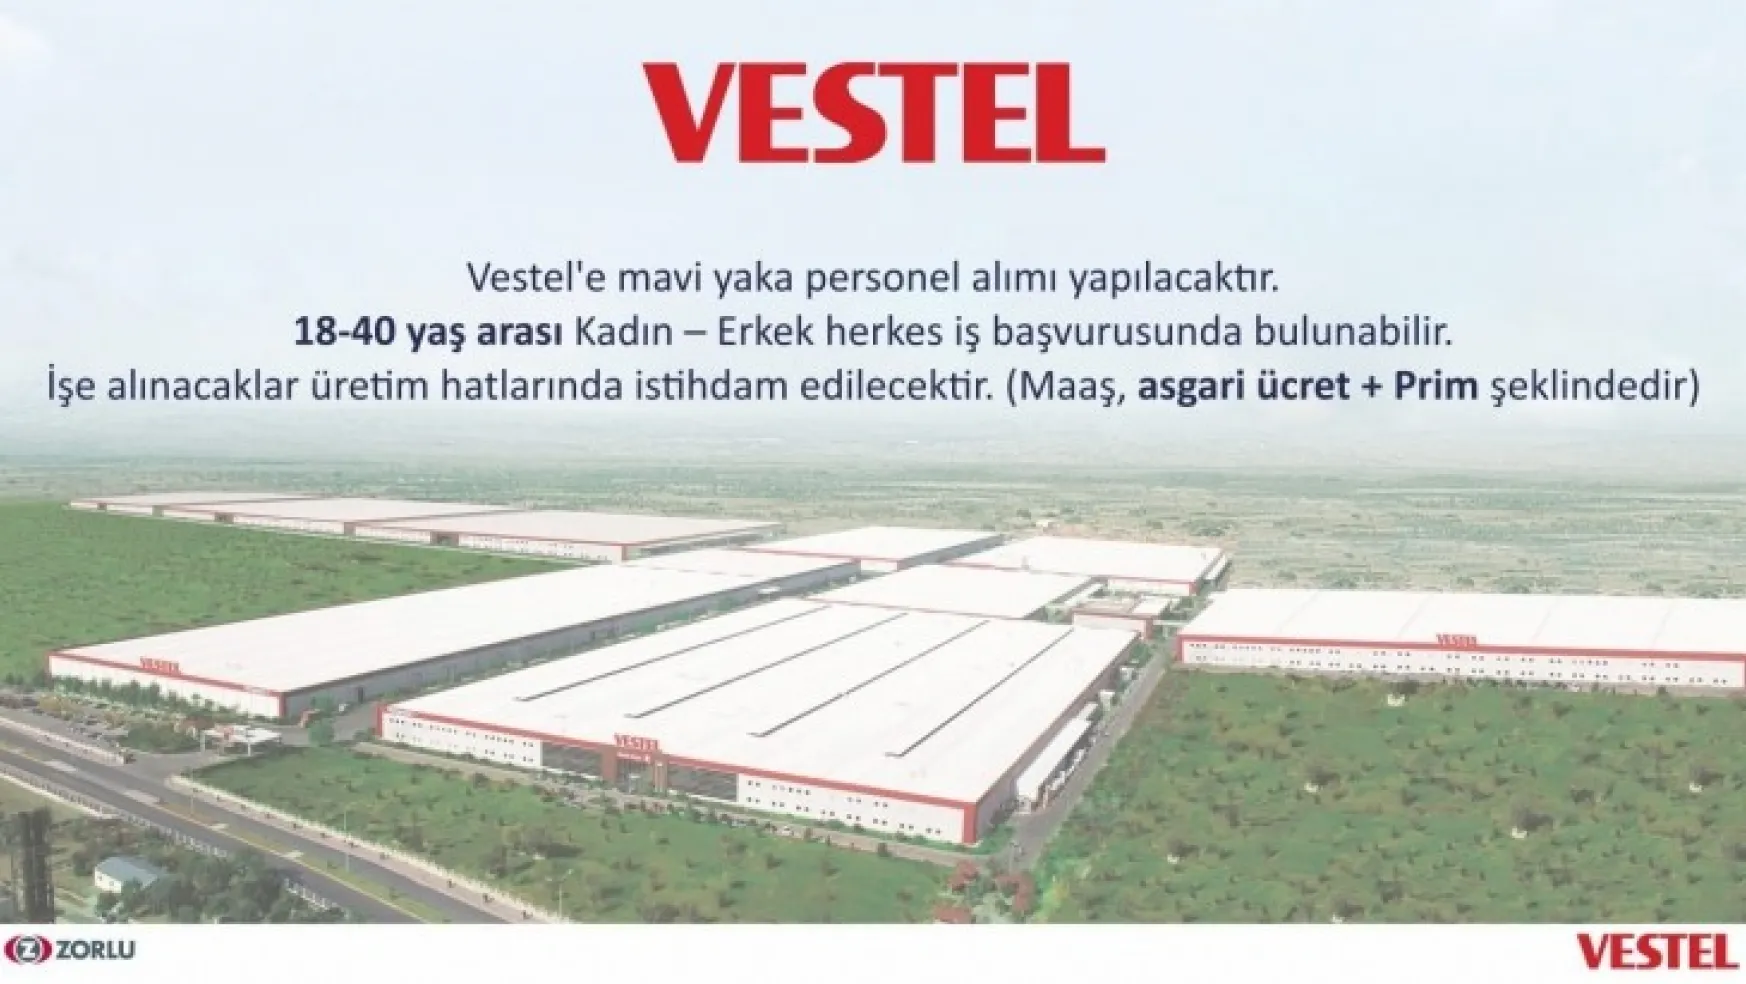 Turgutlu Belediyesi ile Vestel Arasında İşe Alımlarda İşbirliği